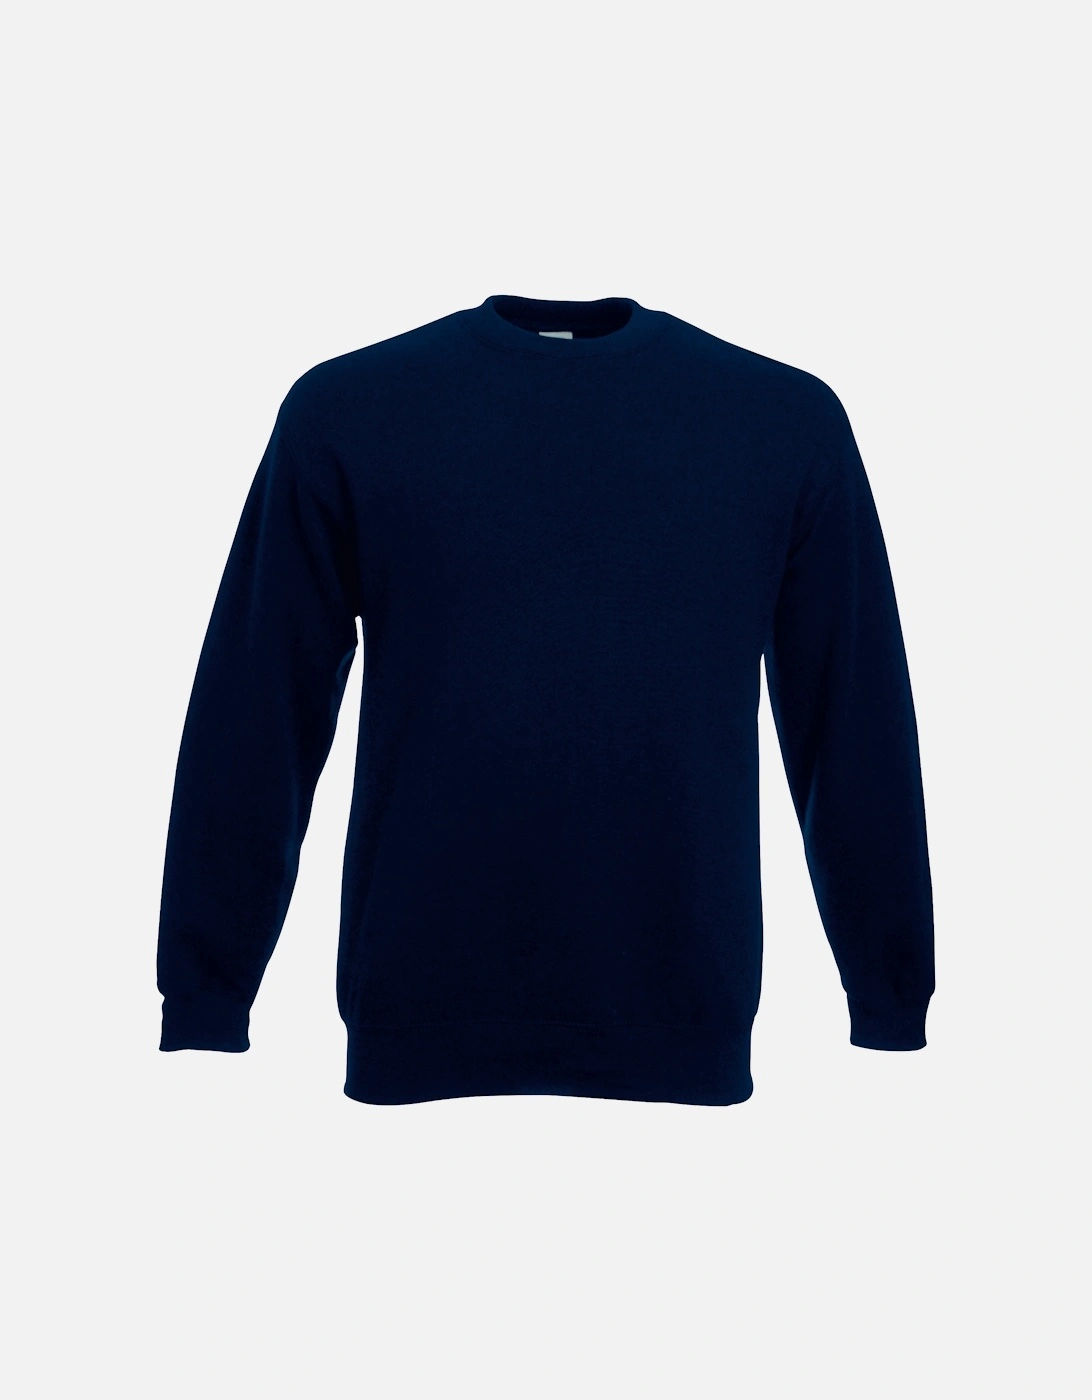 Unisex Premium 70/30 Set-In Sweatshirt, 3 of 2